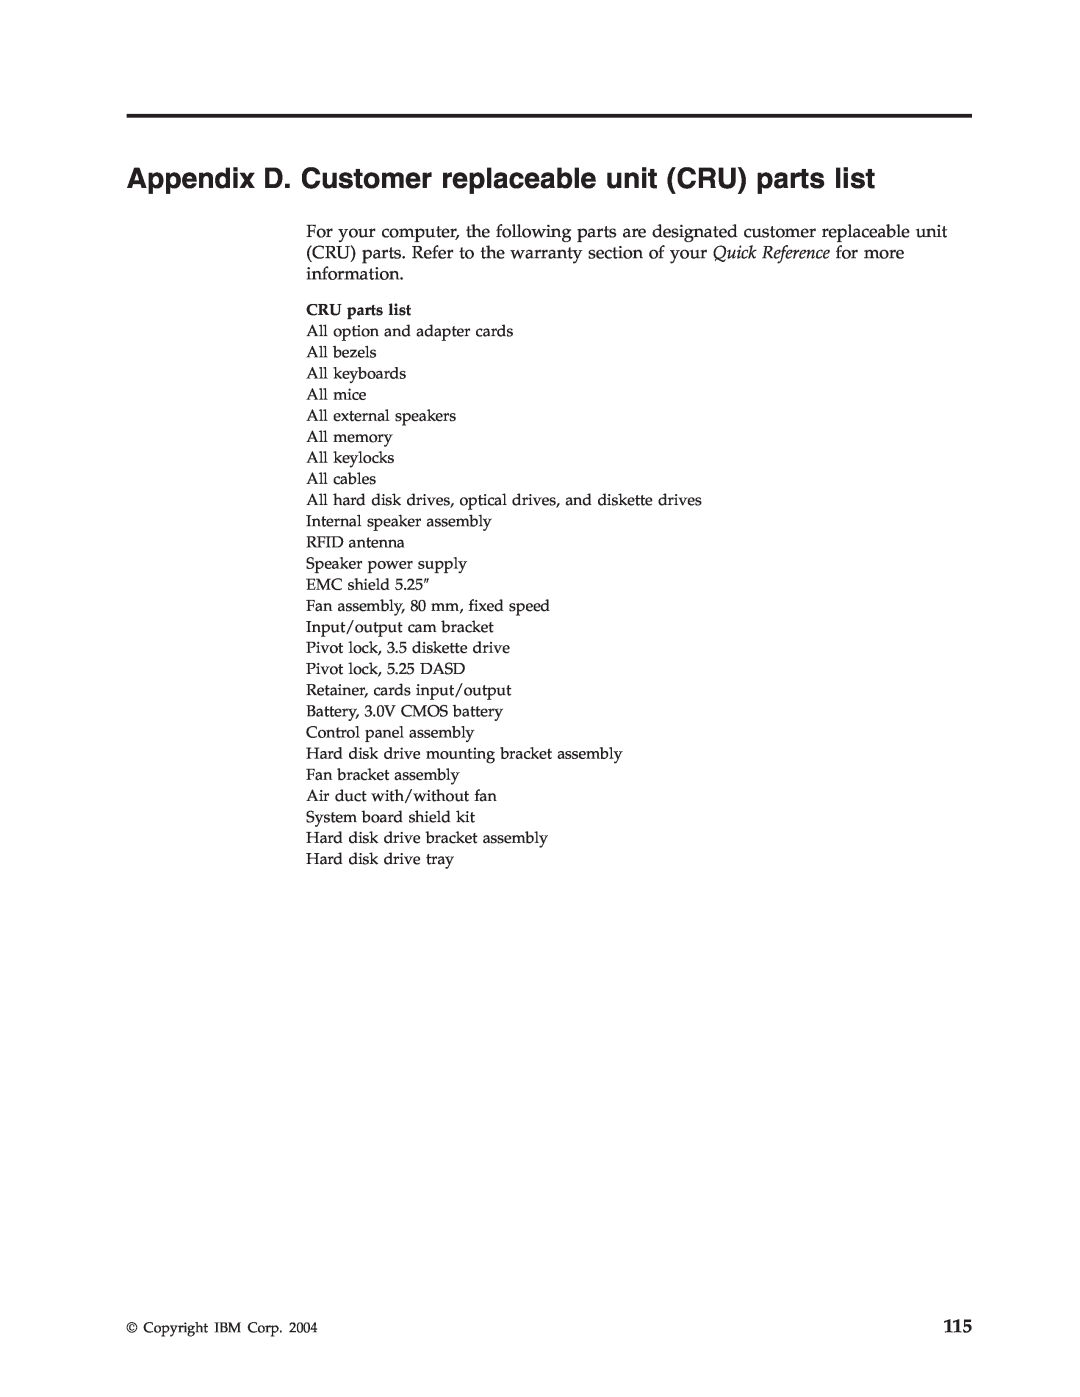 IBM 8188, 8128, 8185, 8189, 8186, 8187, 8190 manual Appendix D. Customer replaceable unit CRU parts list 